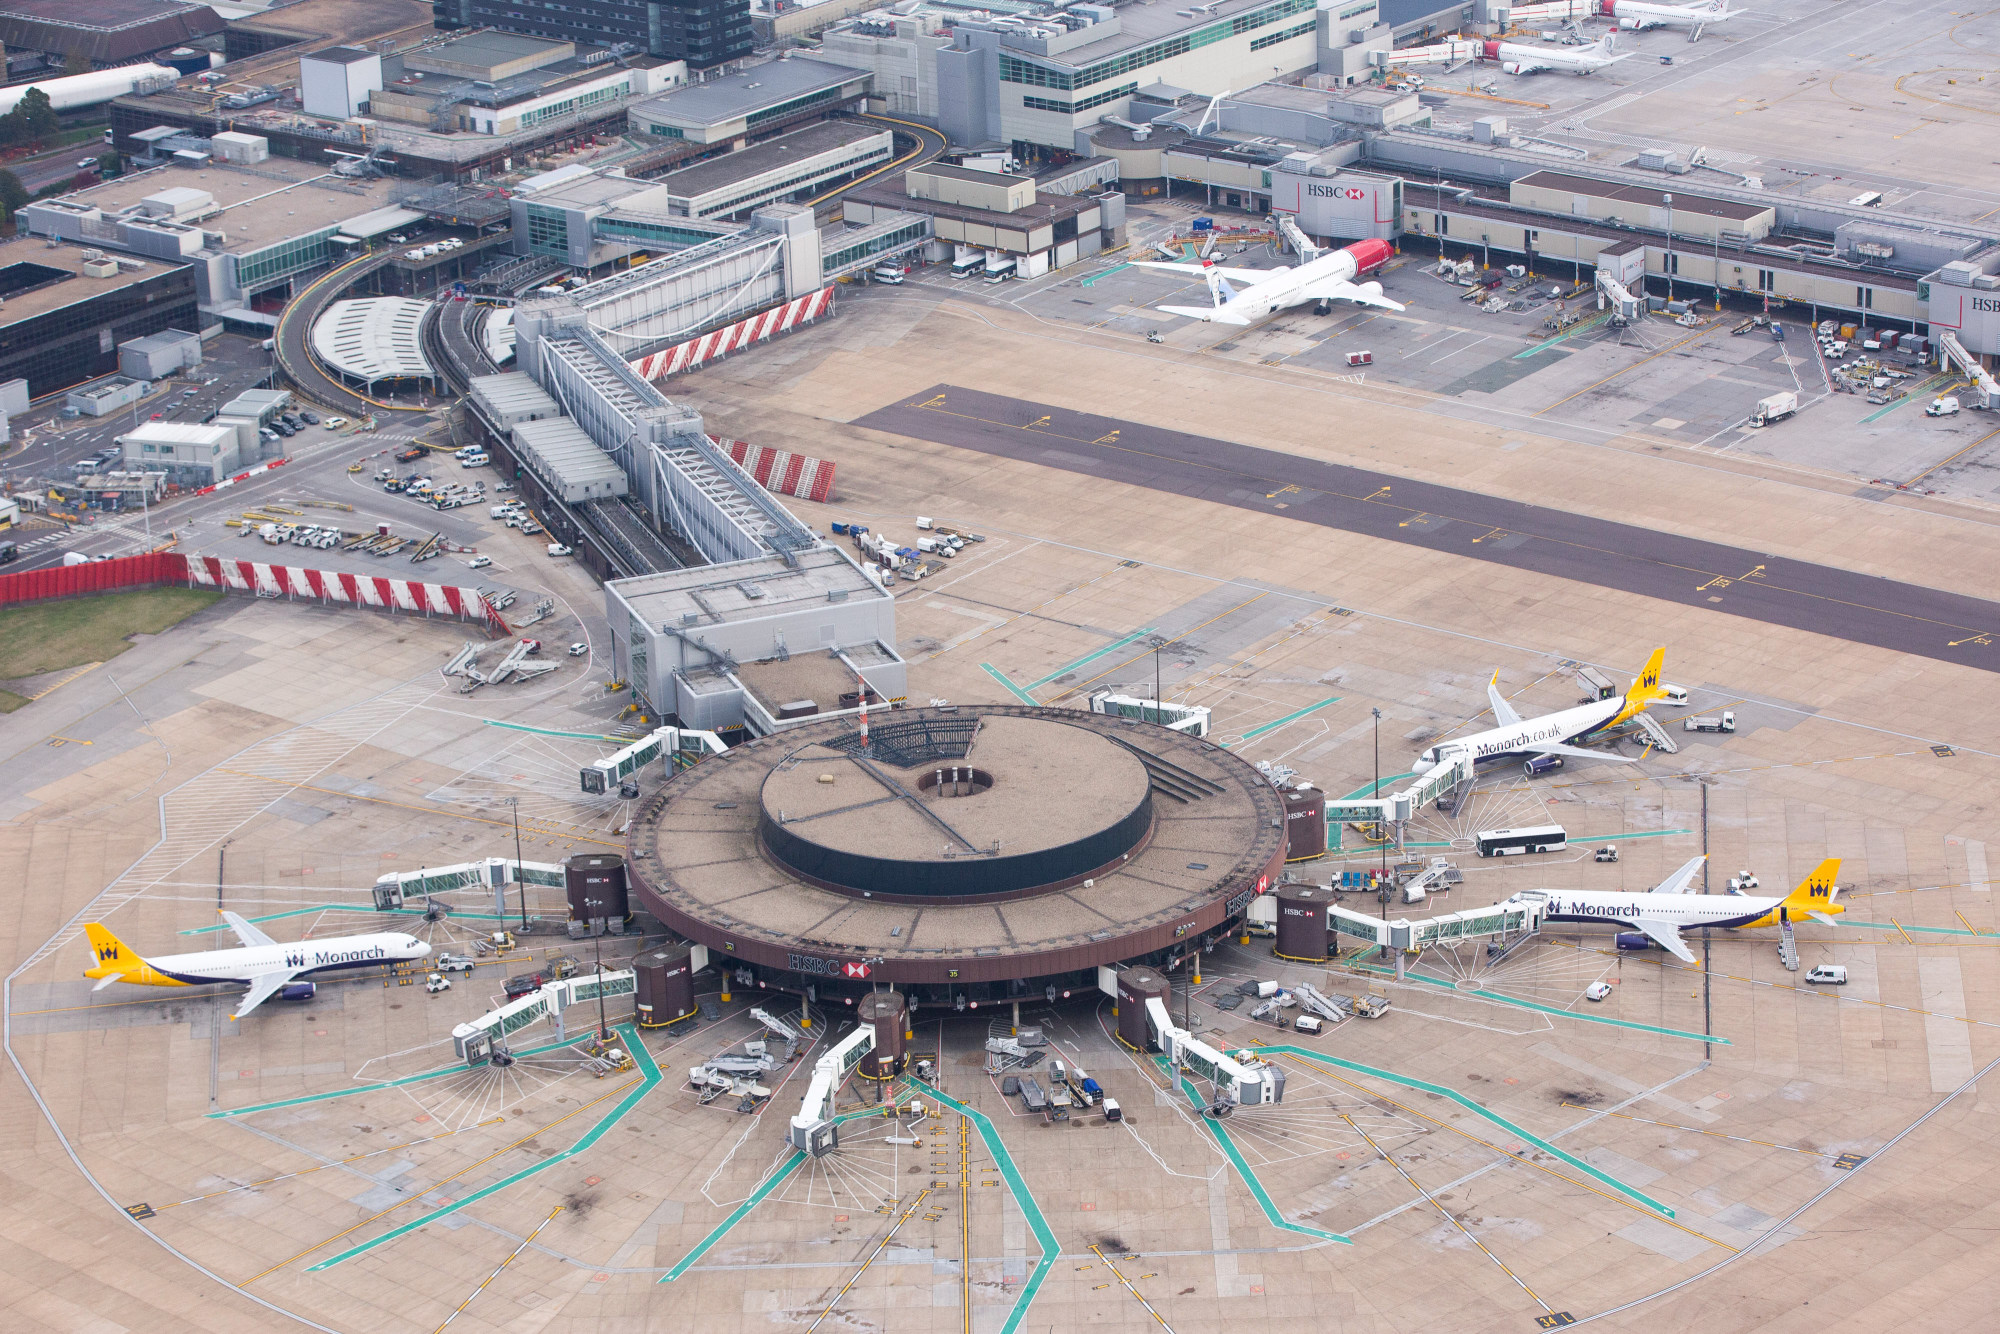 Ηνωμένο Βασίλειο: Επιβάτες εγκλωβίστηκαν στα αεροπλάνα στο αεροδρόμιο Gatwick